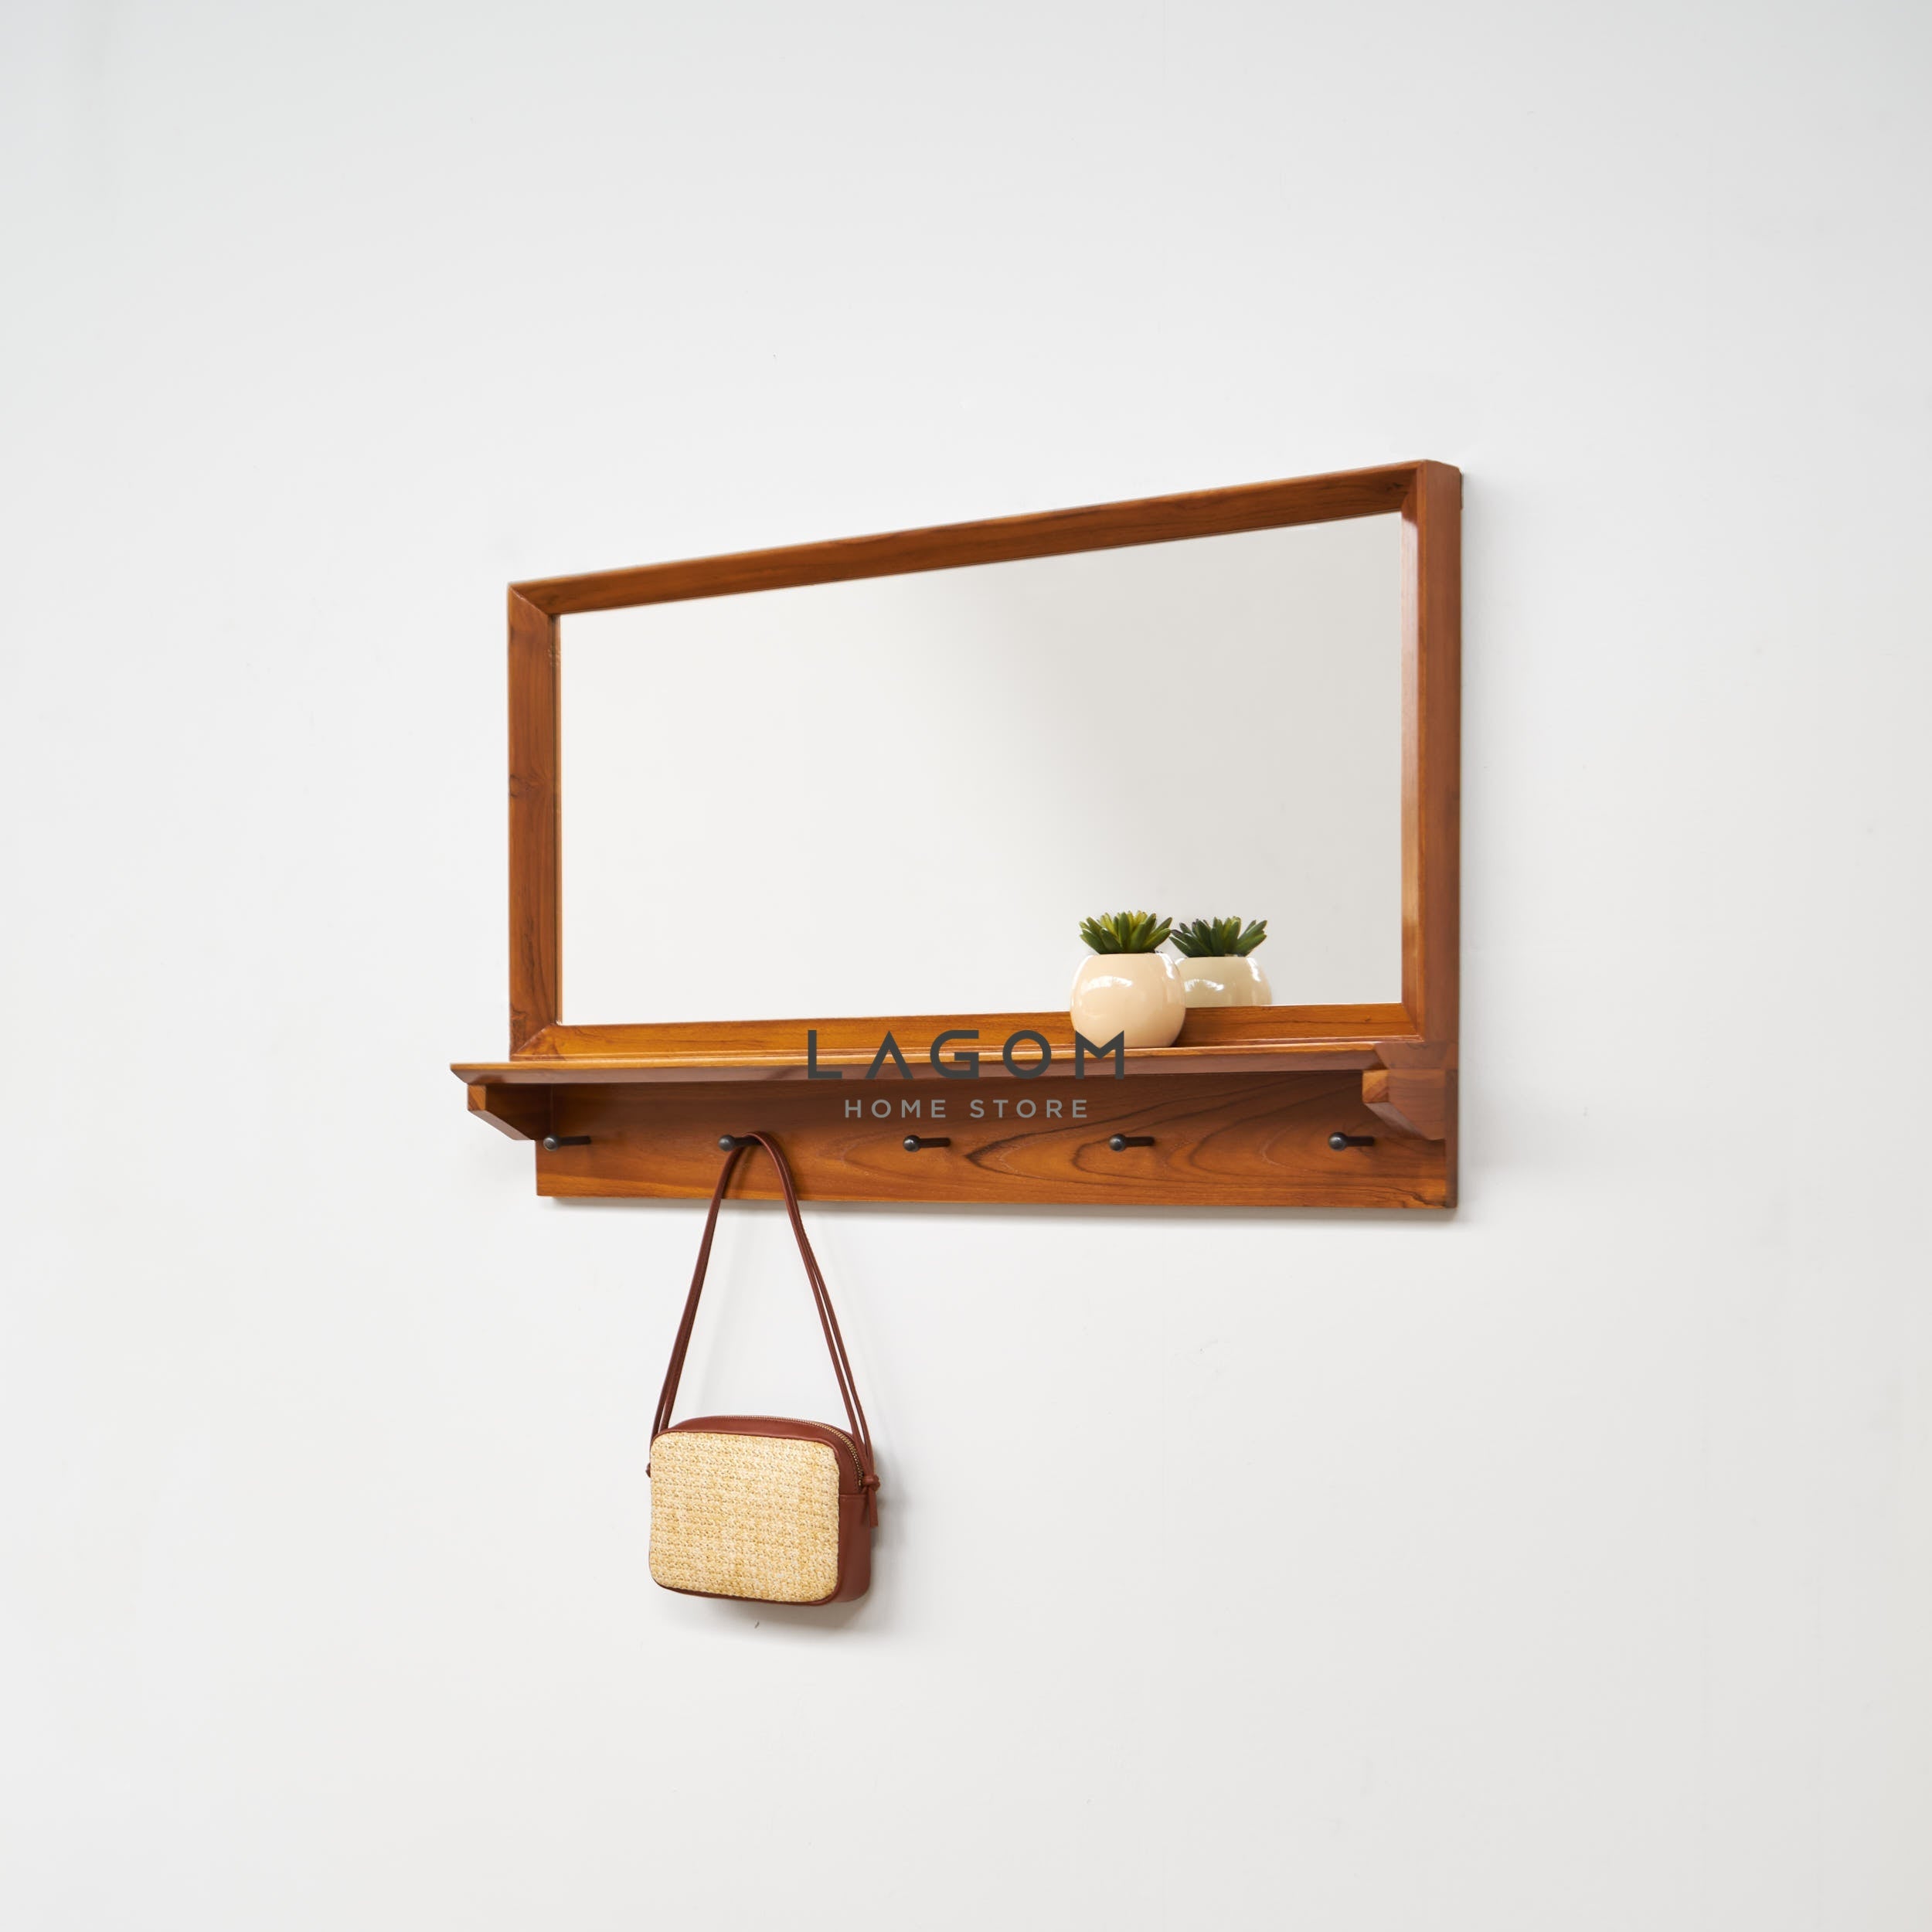 Gantungan Dinding Jati dengan Cermin dan Ambalan Kecil Wall Coat Hanger Lagom Home Store Jati Furnitur Teak Furniture Jakarta